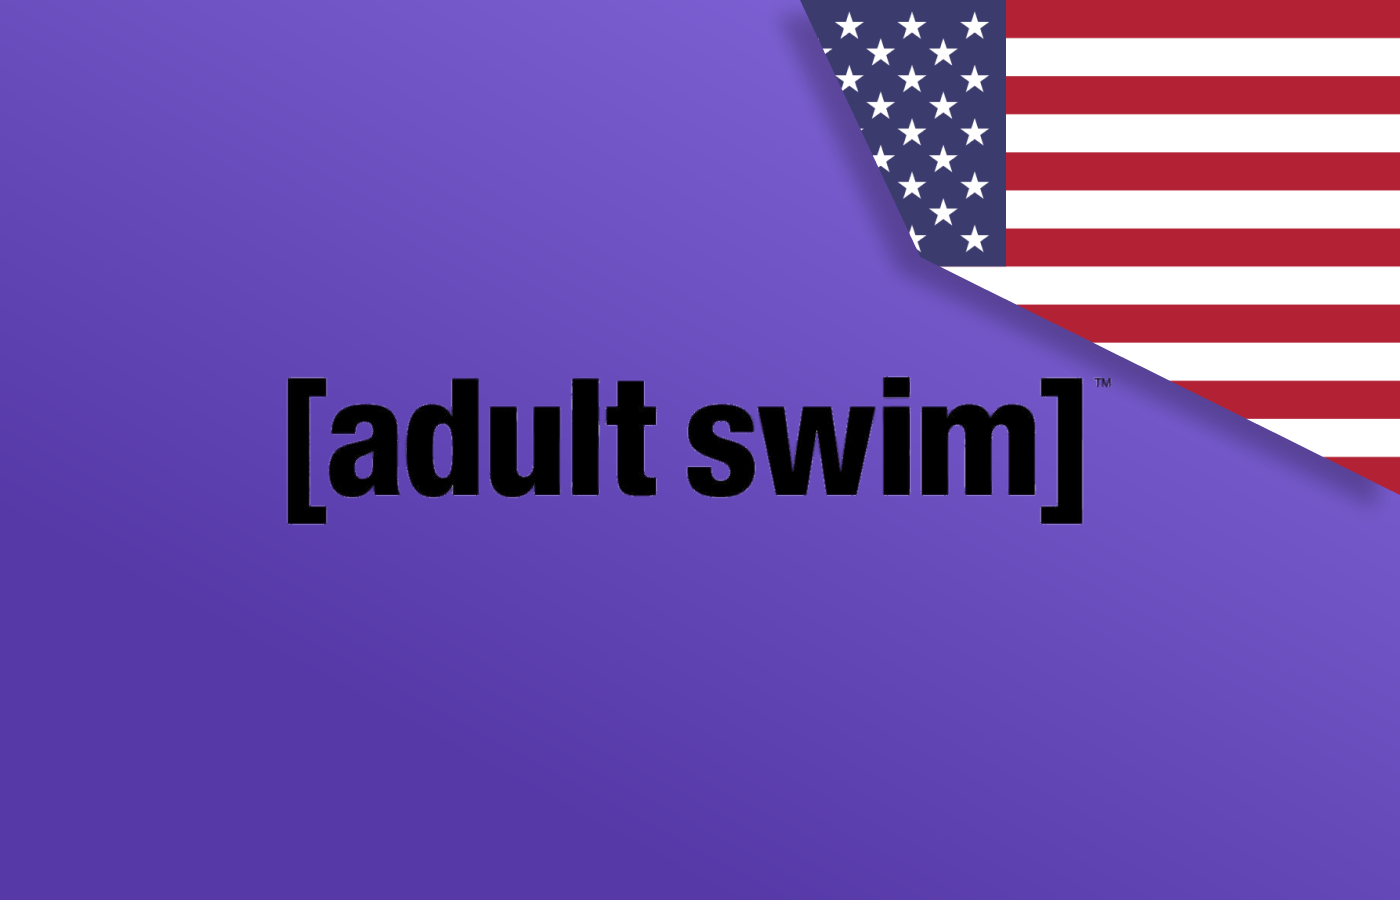 Watch Adult Swim Outside USA